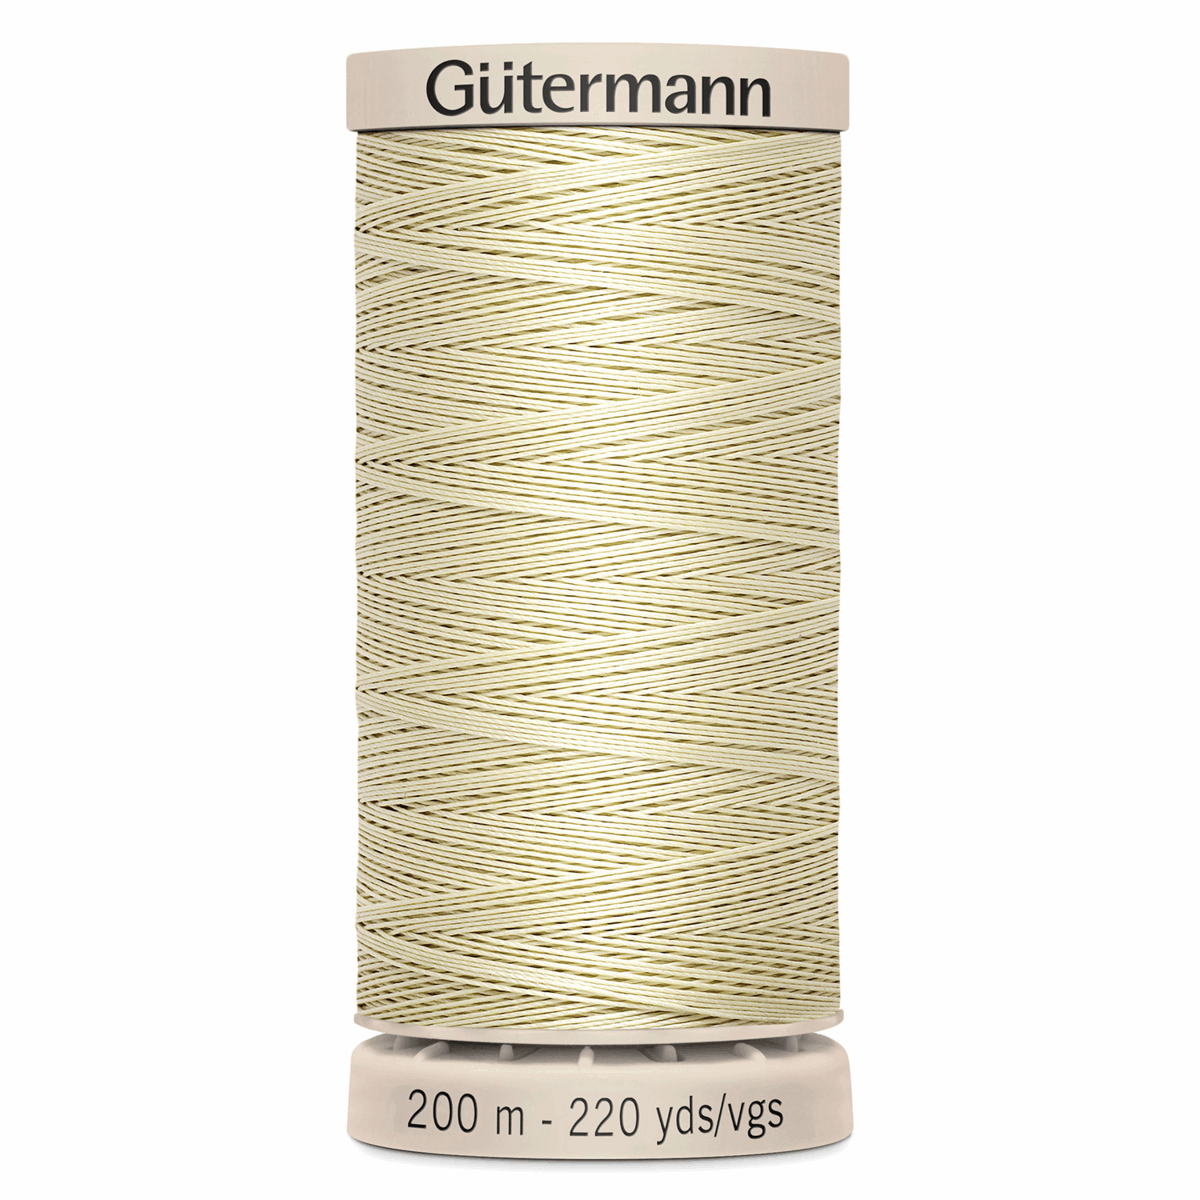 Gutermann Quilting Thread 200m - Colour 0829